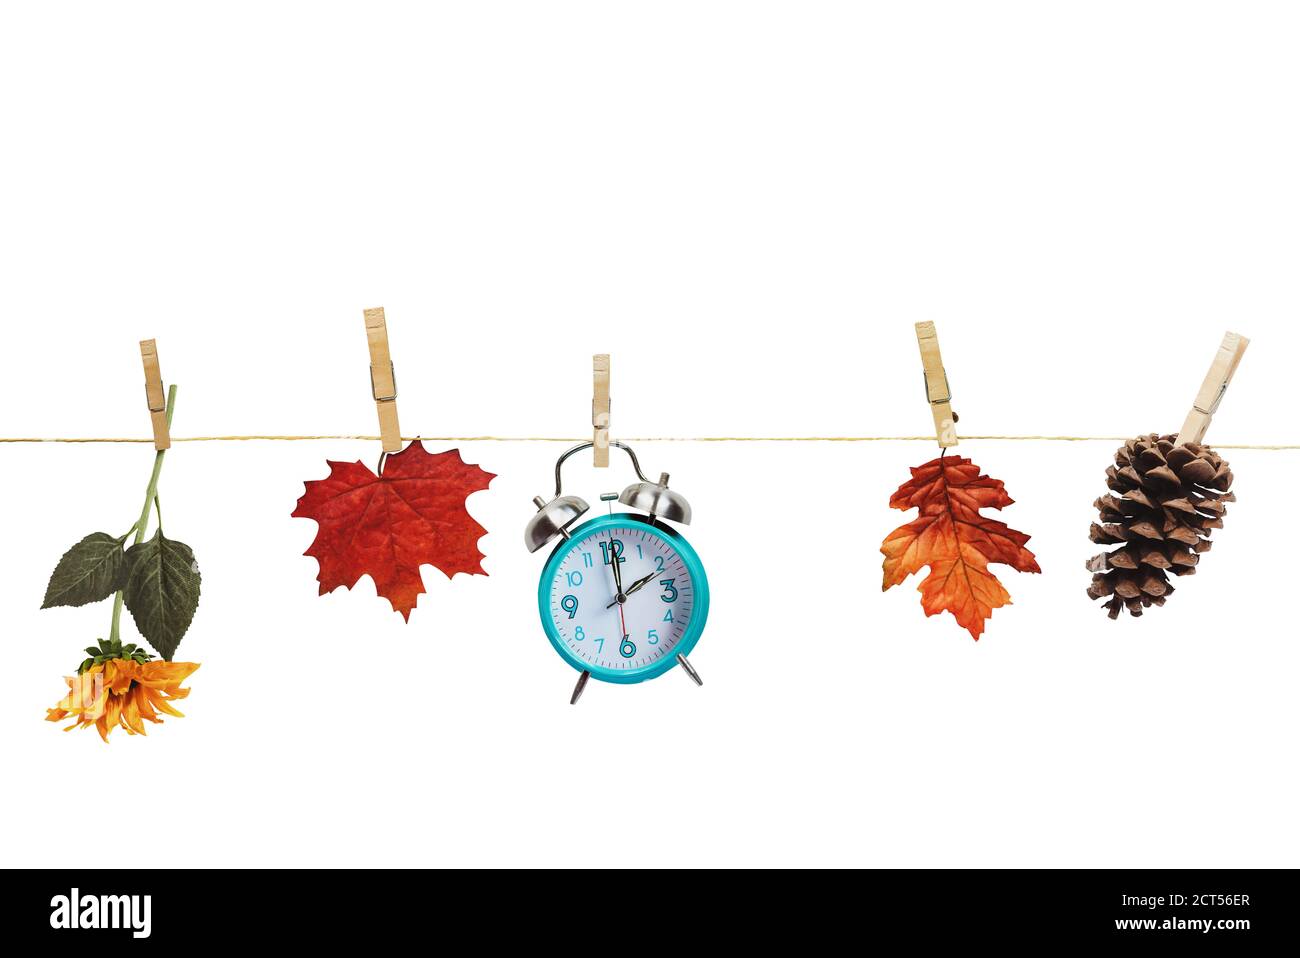 Stellen Sie Ihre Uhren zurück mit dieser Uhr, Blume, Herbstblätter und und Kiefer Kegel hängen an Kleidung Pins an einer Wäscheleine über einem weißen Hintergrund. Tagli Stockfoto